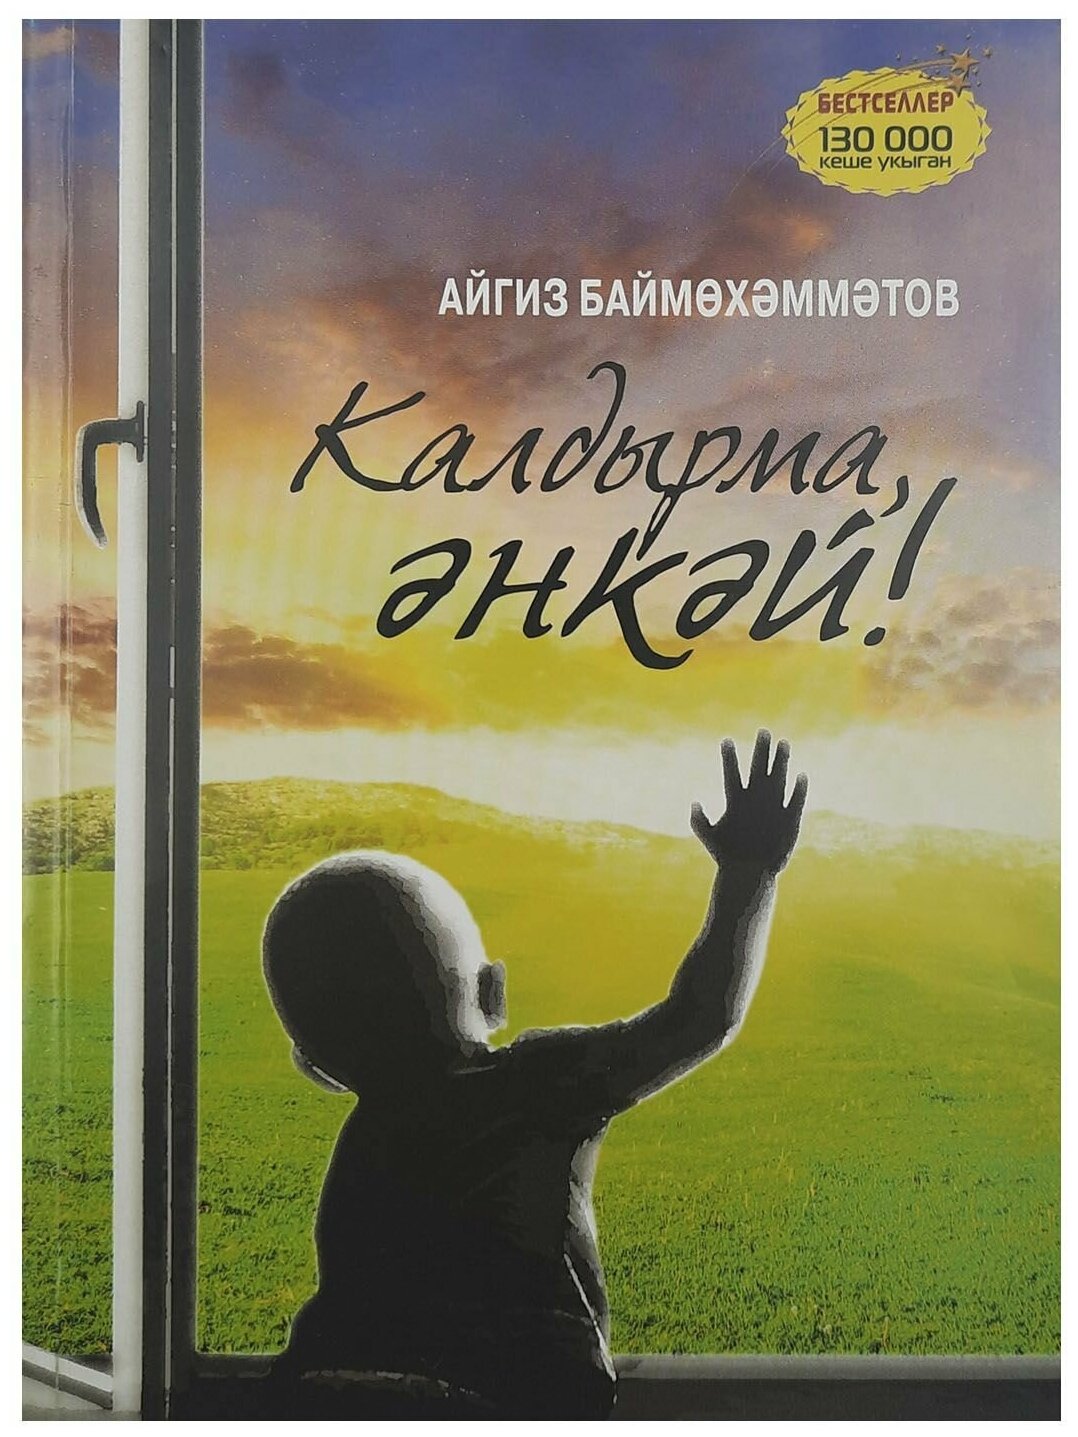 Не оставляй, мама! /Калдырма, энкэй! Книга на башкирском языке. Баймухаметов Айгиз.